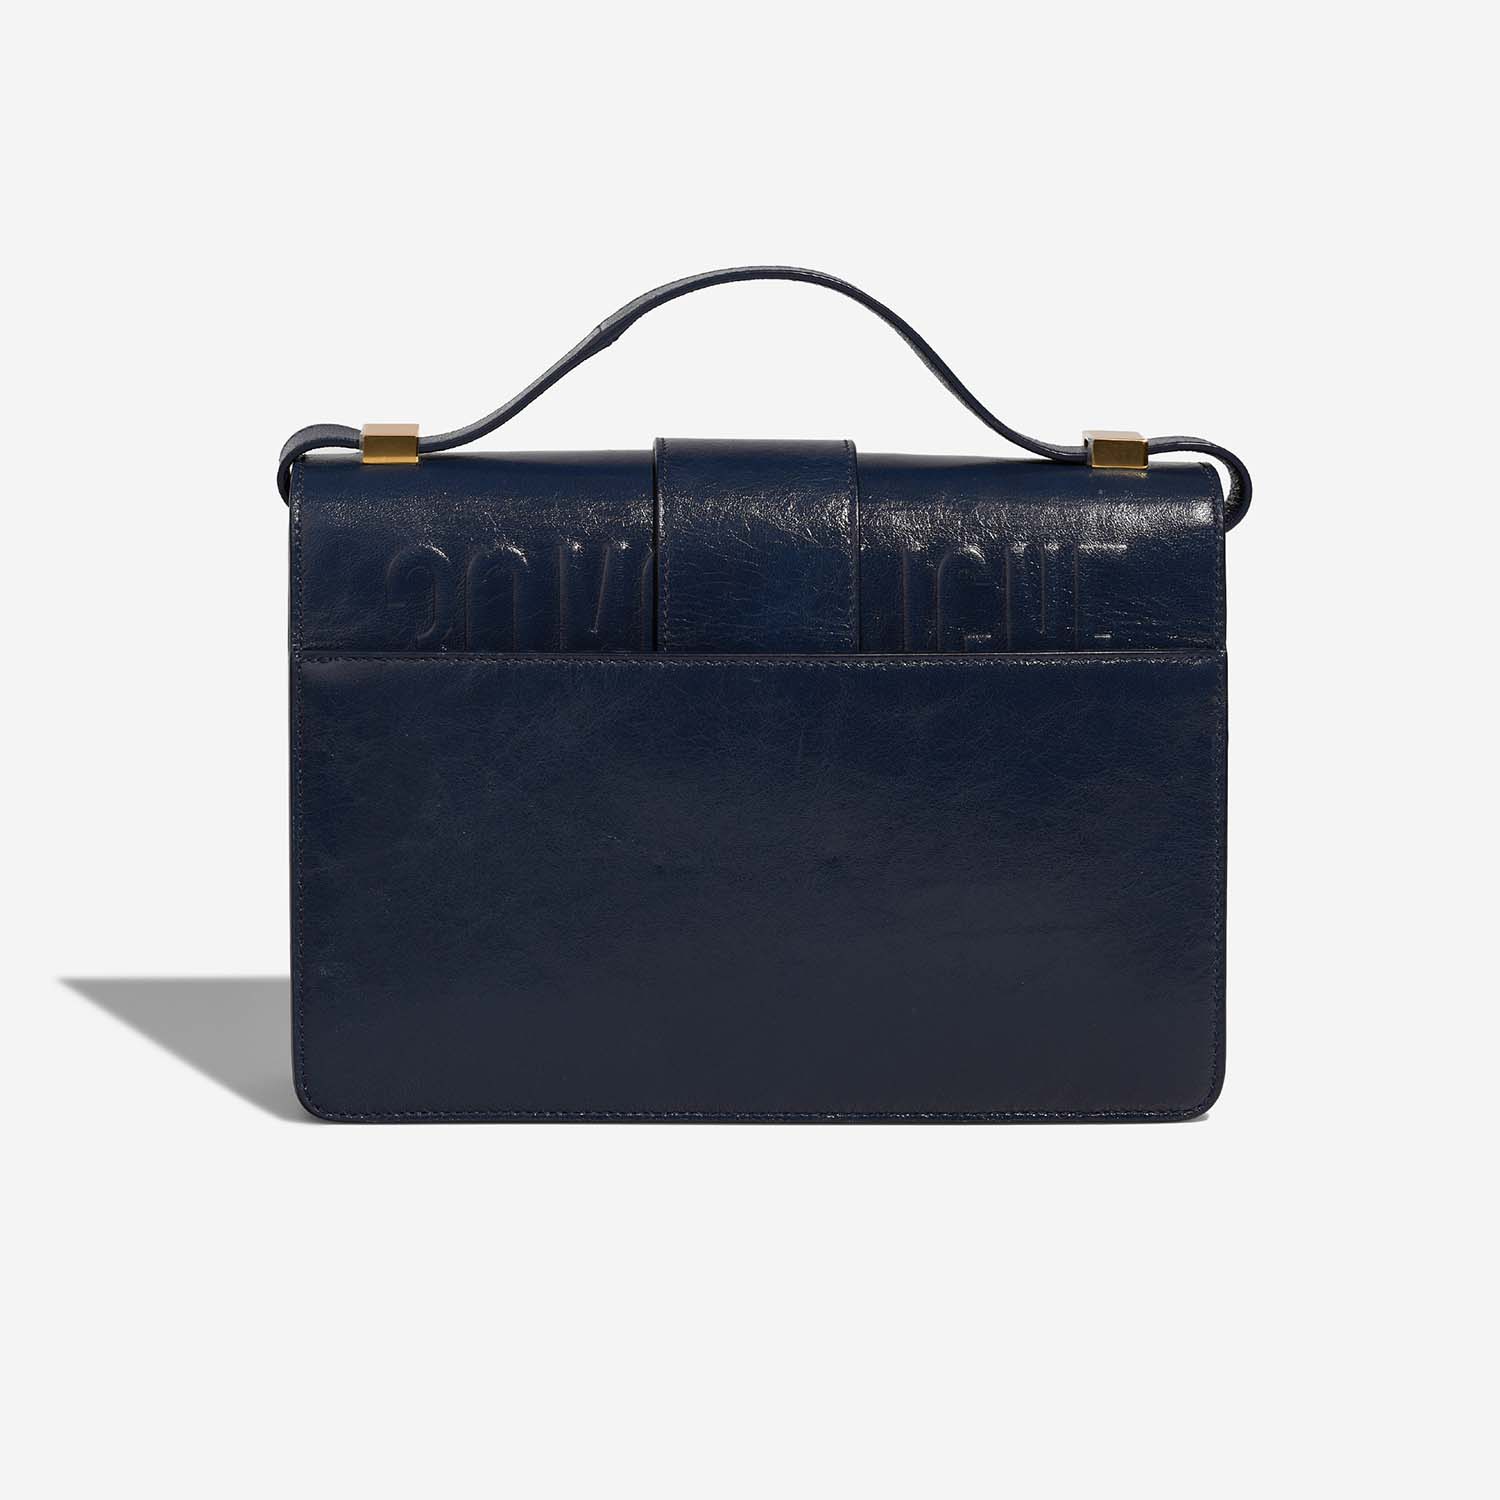 Dior 30Montaigne NavyBlue Back | Verkaufen Sie Ihre Designertasche auf Saclab.com